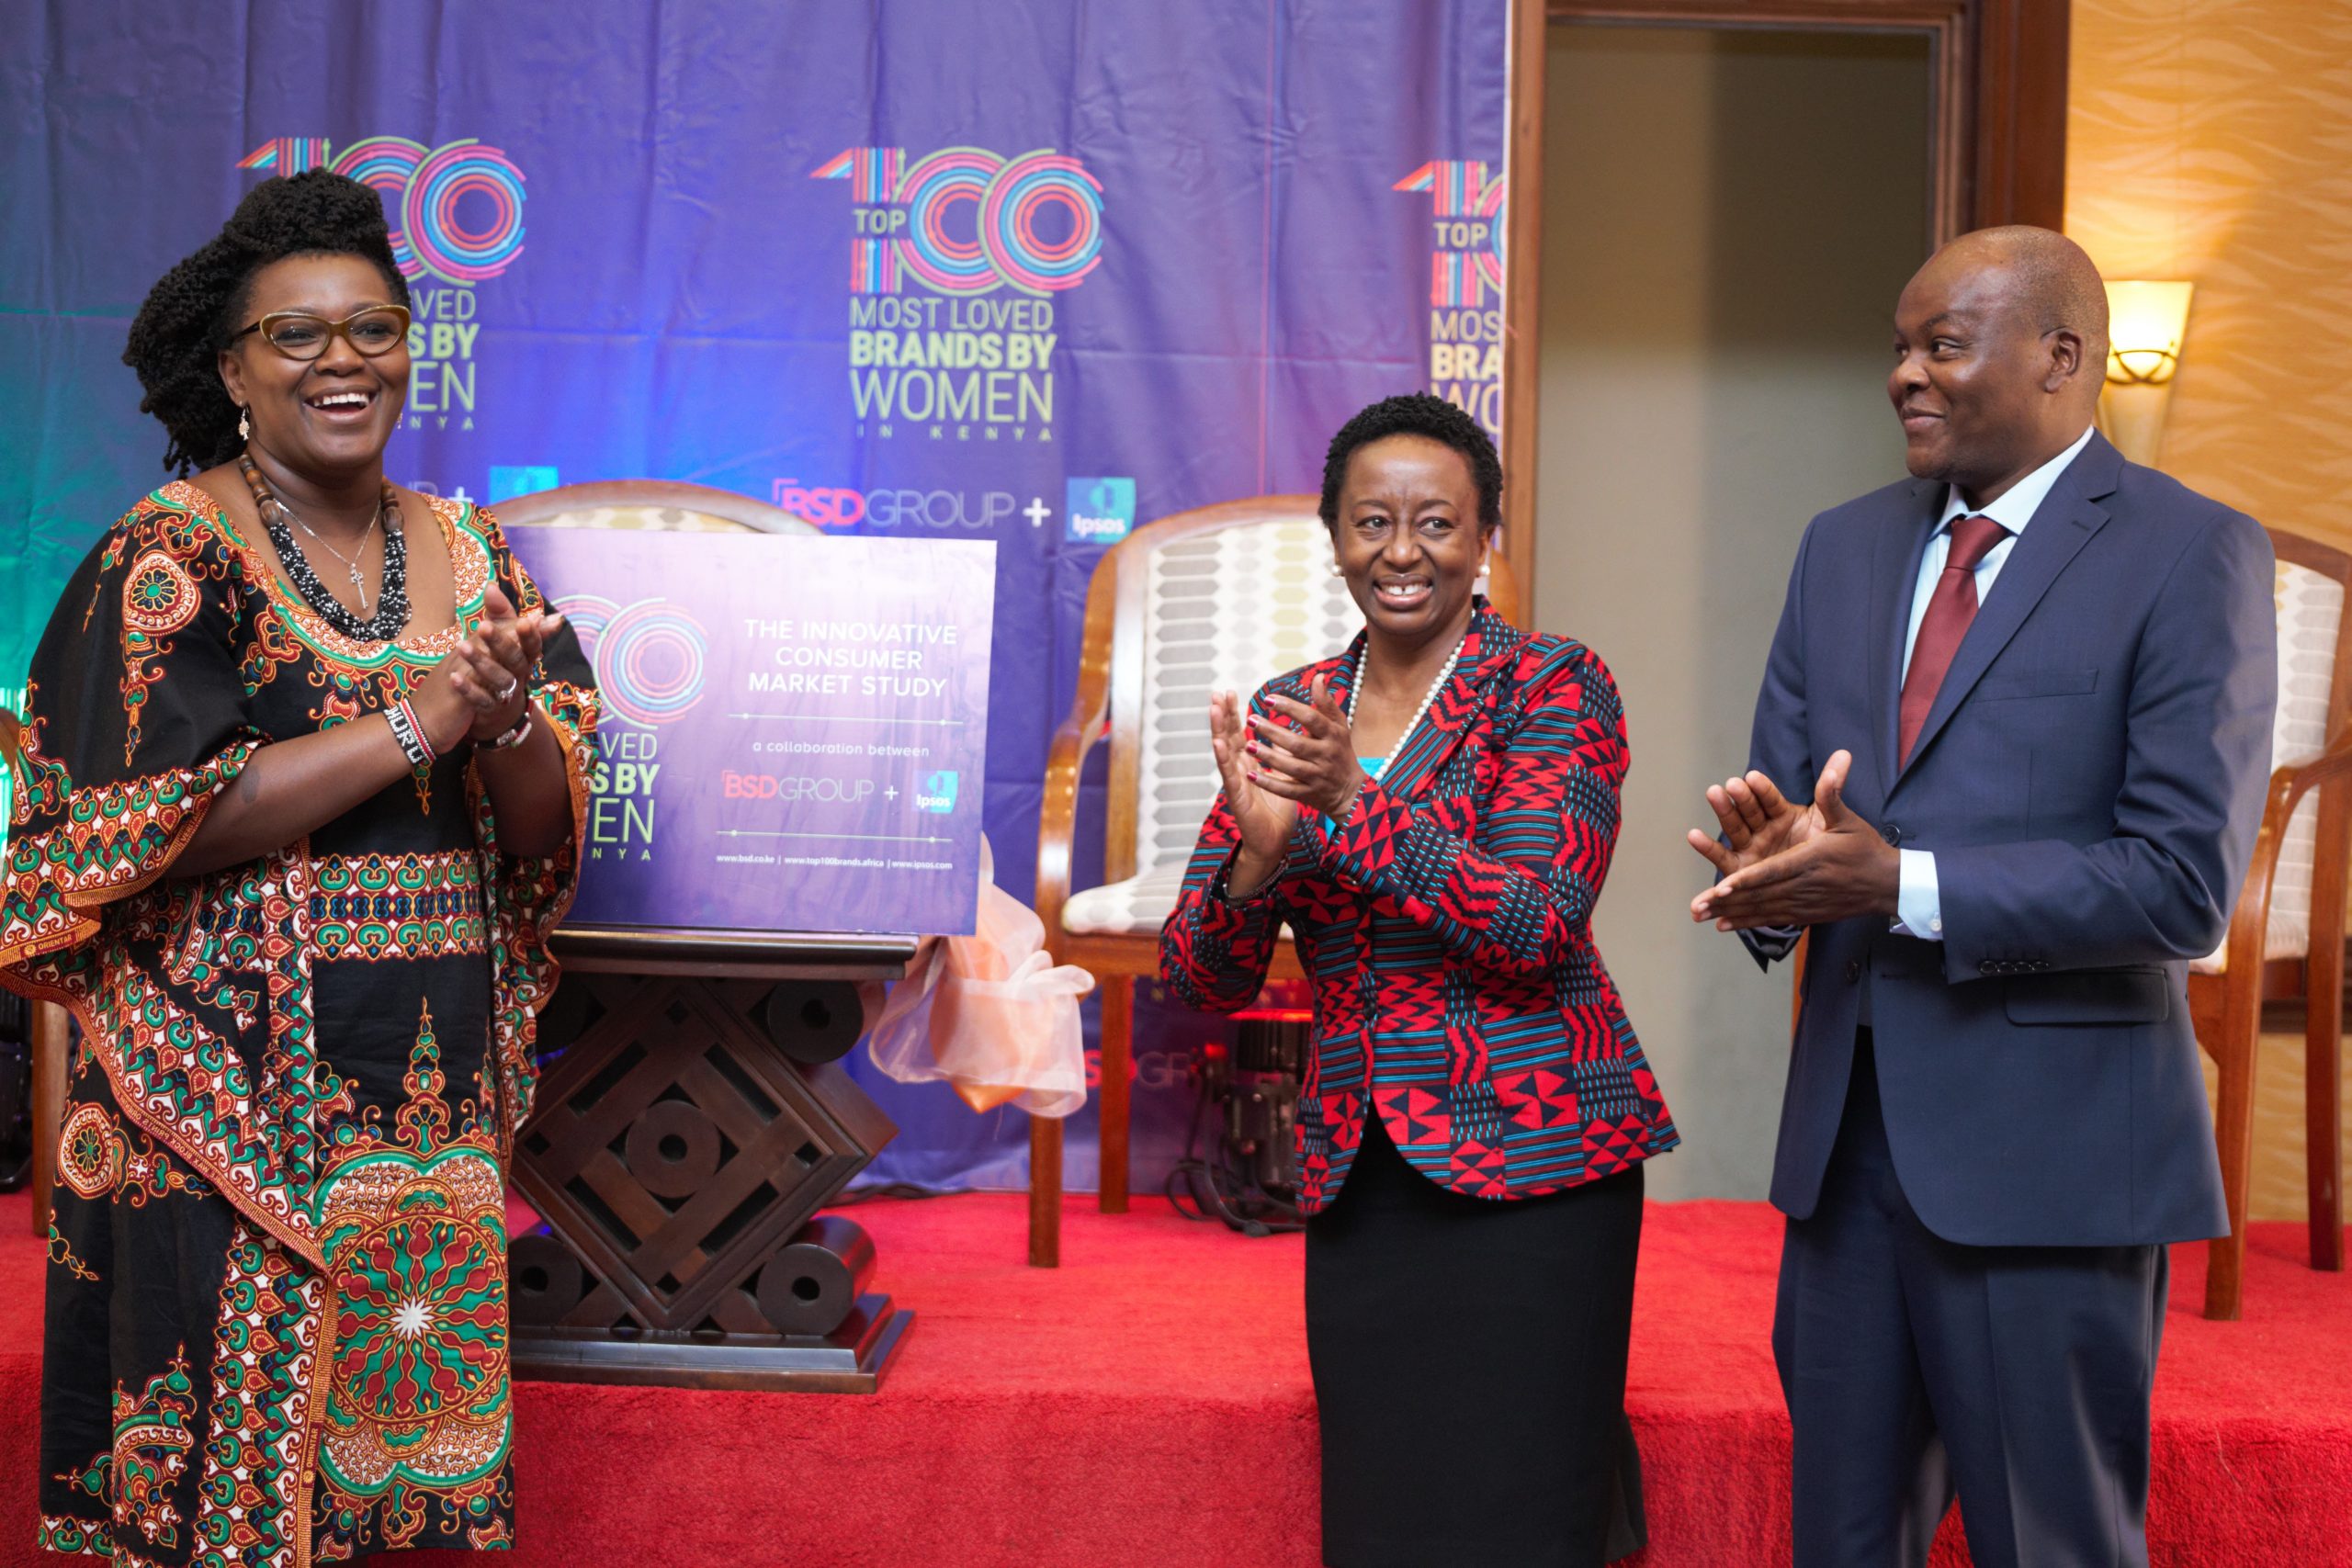 ipsos-bsd-group-launch-study-on-the-top-100-brands-loved-by-women-in-kenya-hapakenya